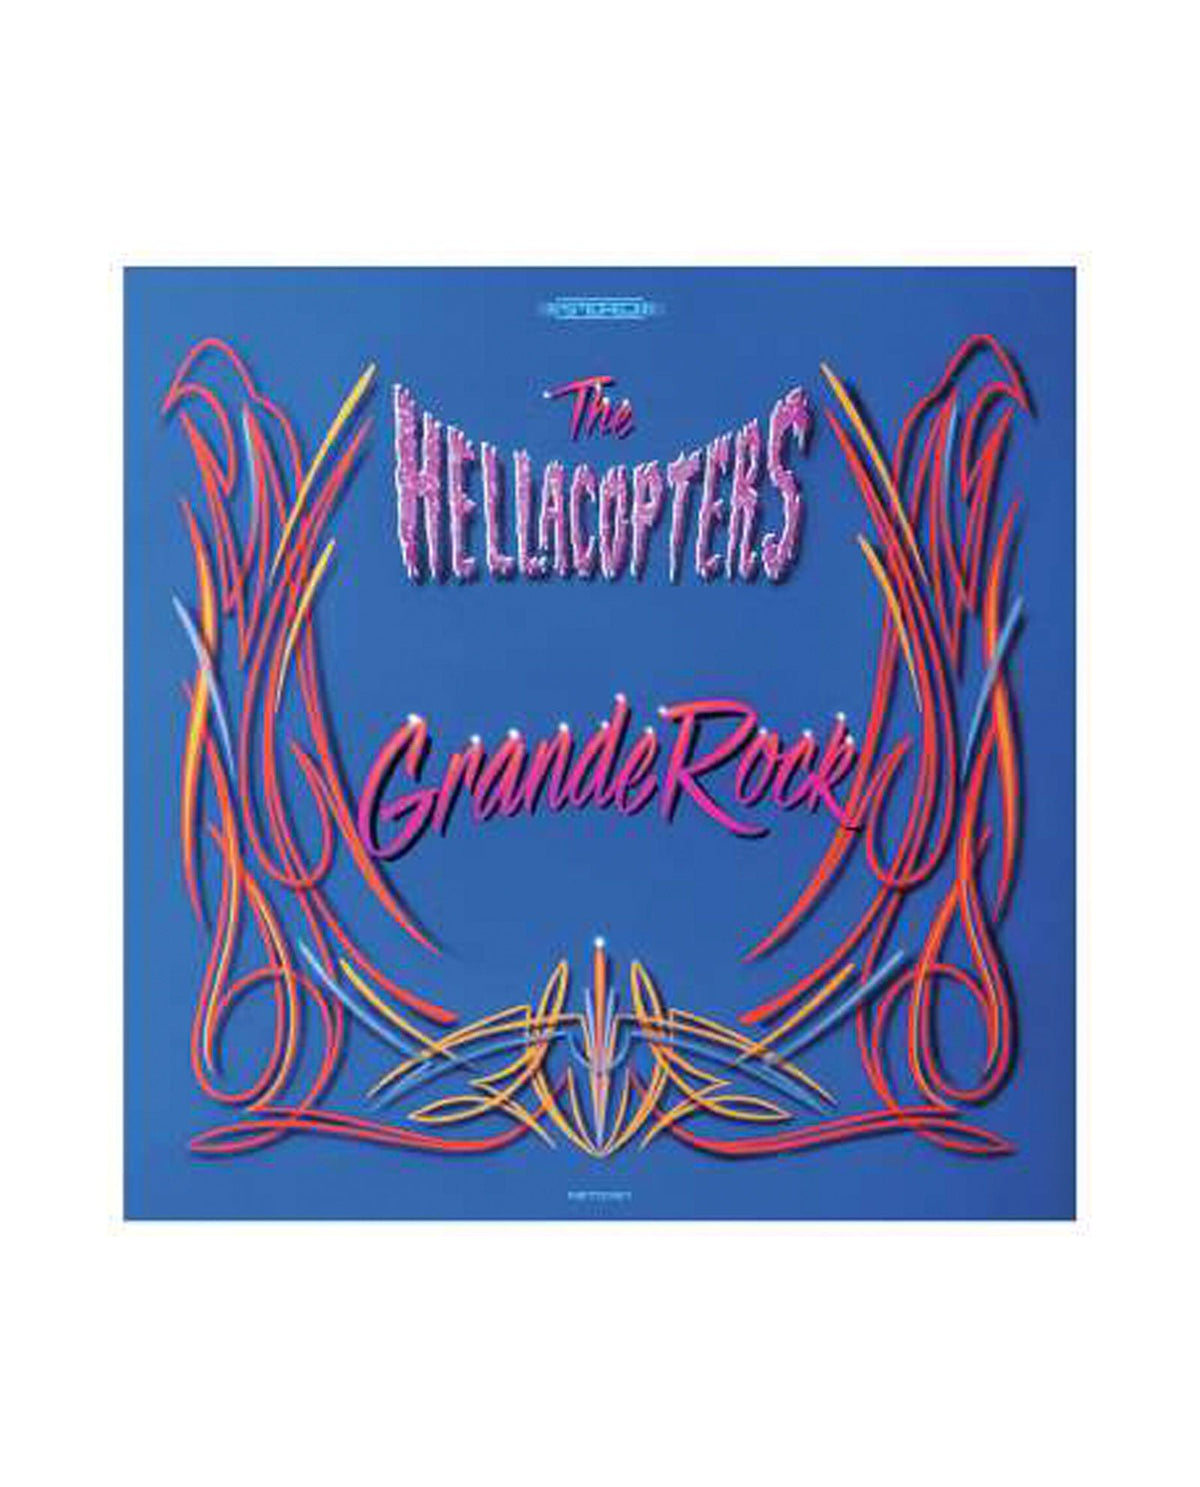 The Hellacopters - 2CD "Grande Rock Revisited" - D2fy · Rocktud - Rocktud